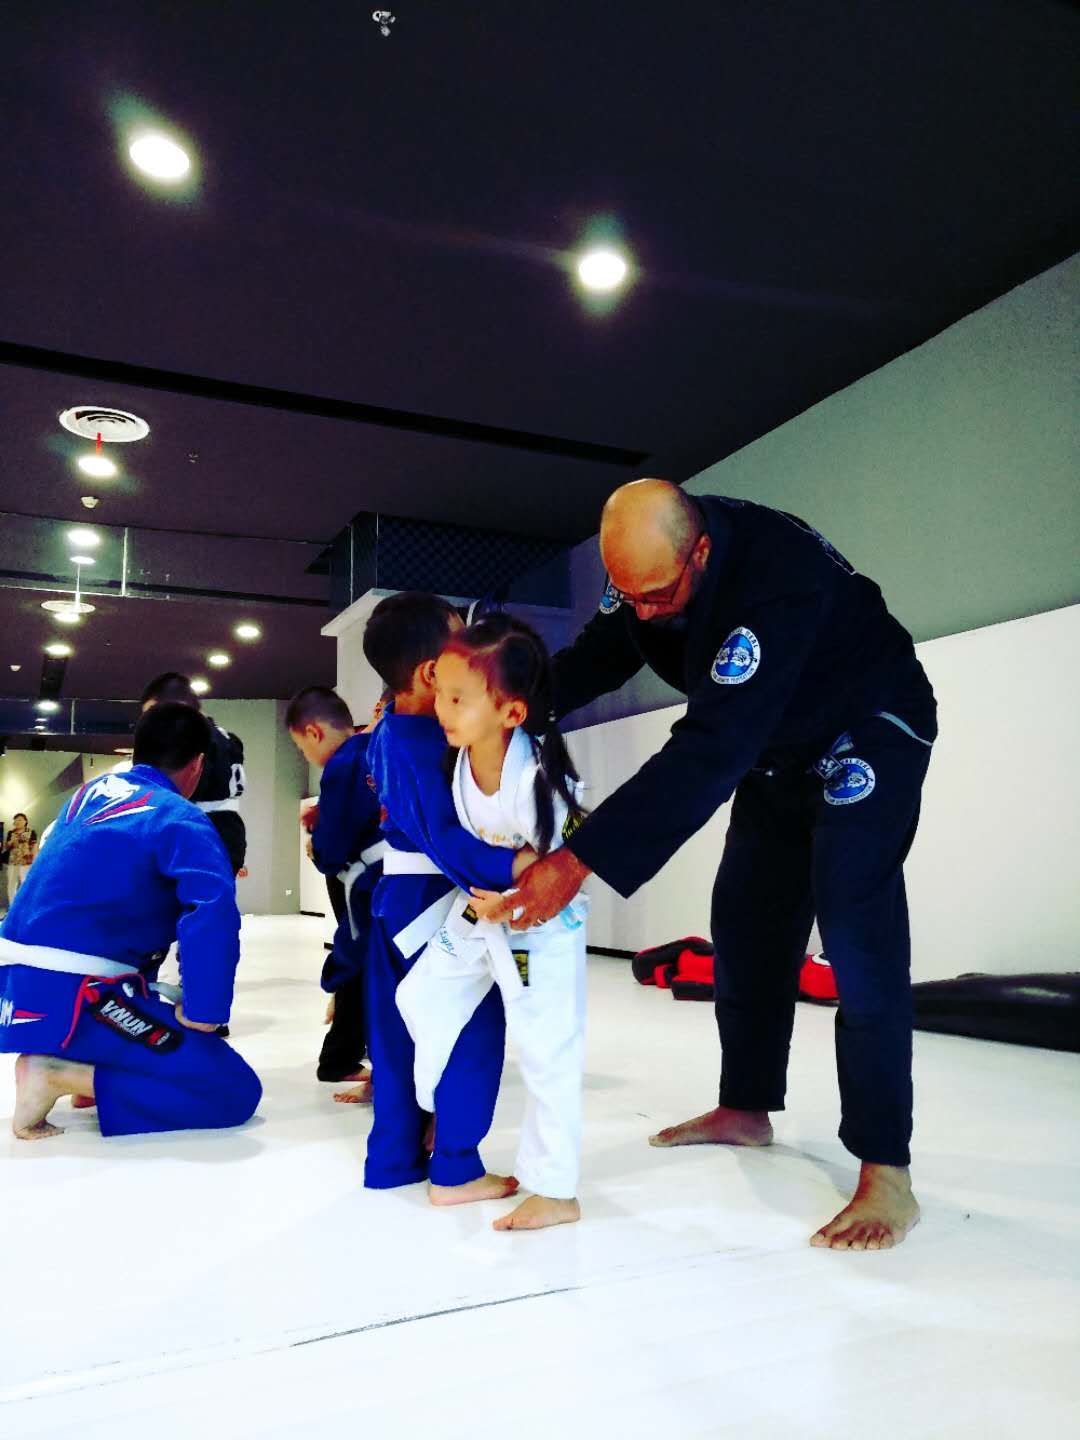 Kids jiujitsu and judo